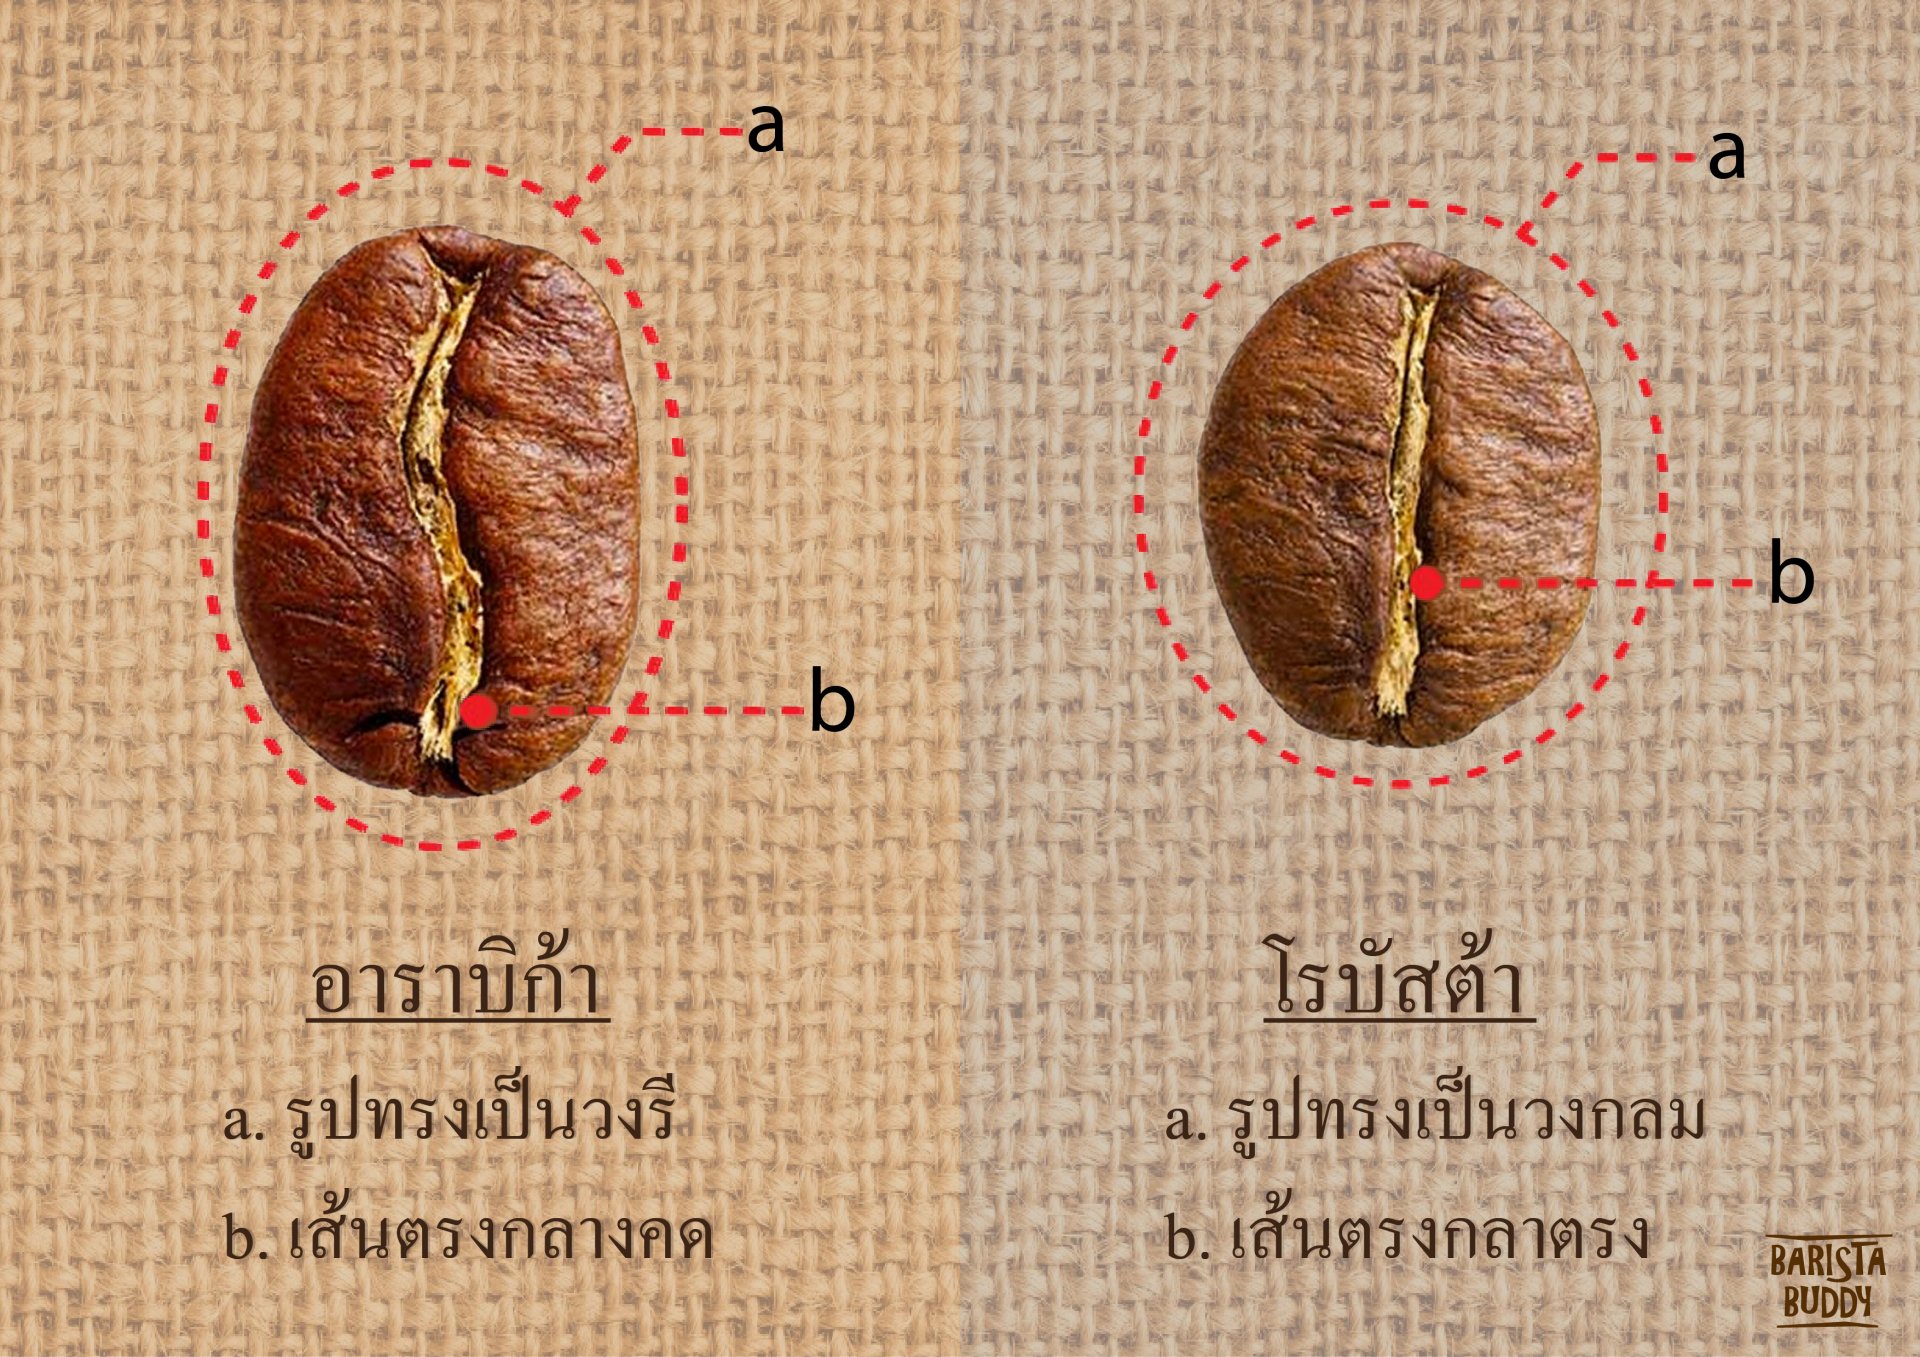 ความแตกต่างทางด้านรูปทรงและลักษณะของ arabica และ robusta